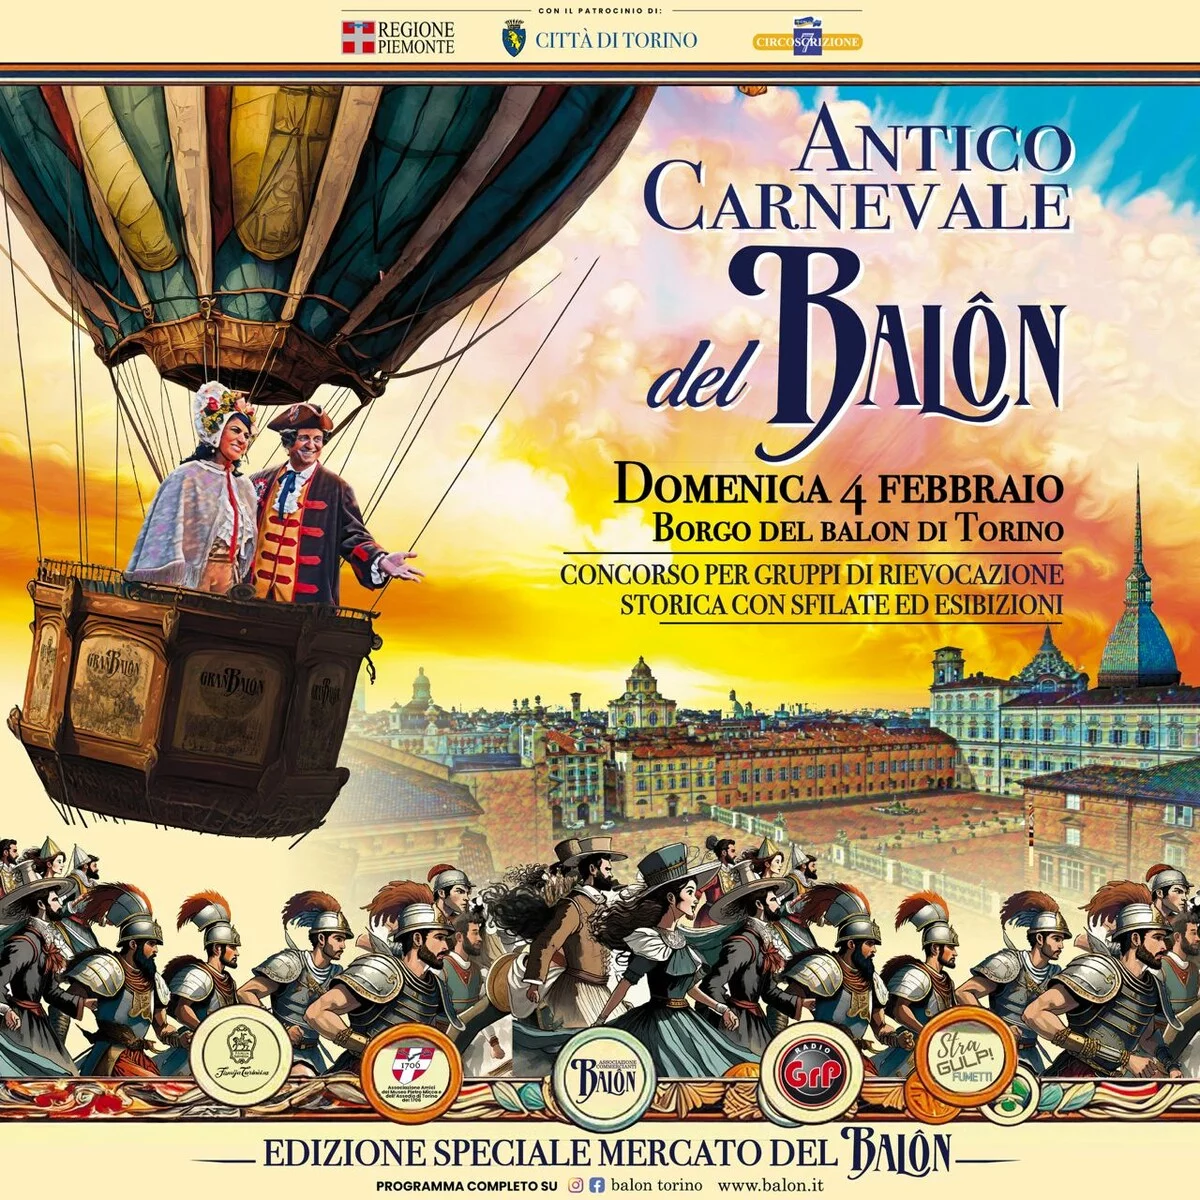 Antico Carnevale del Balon